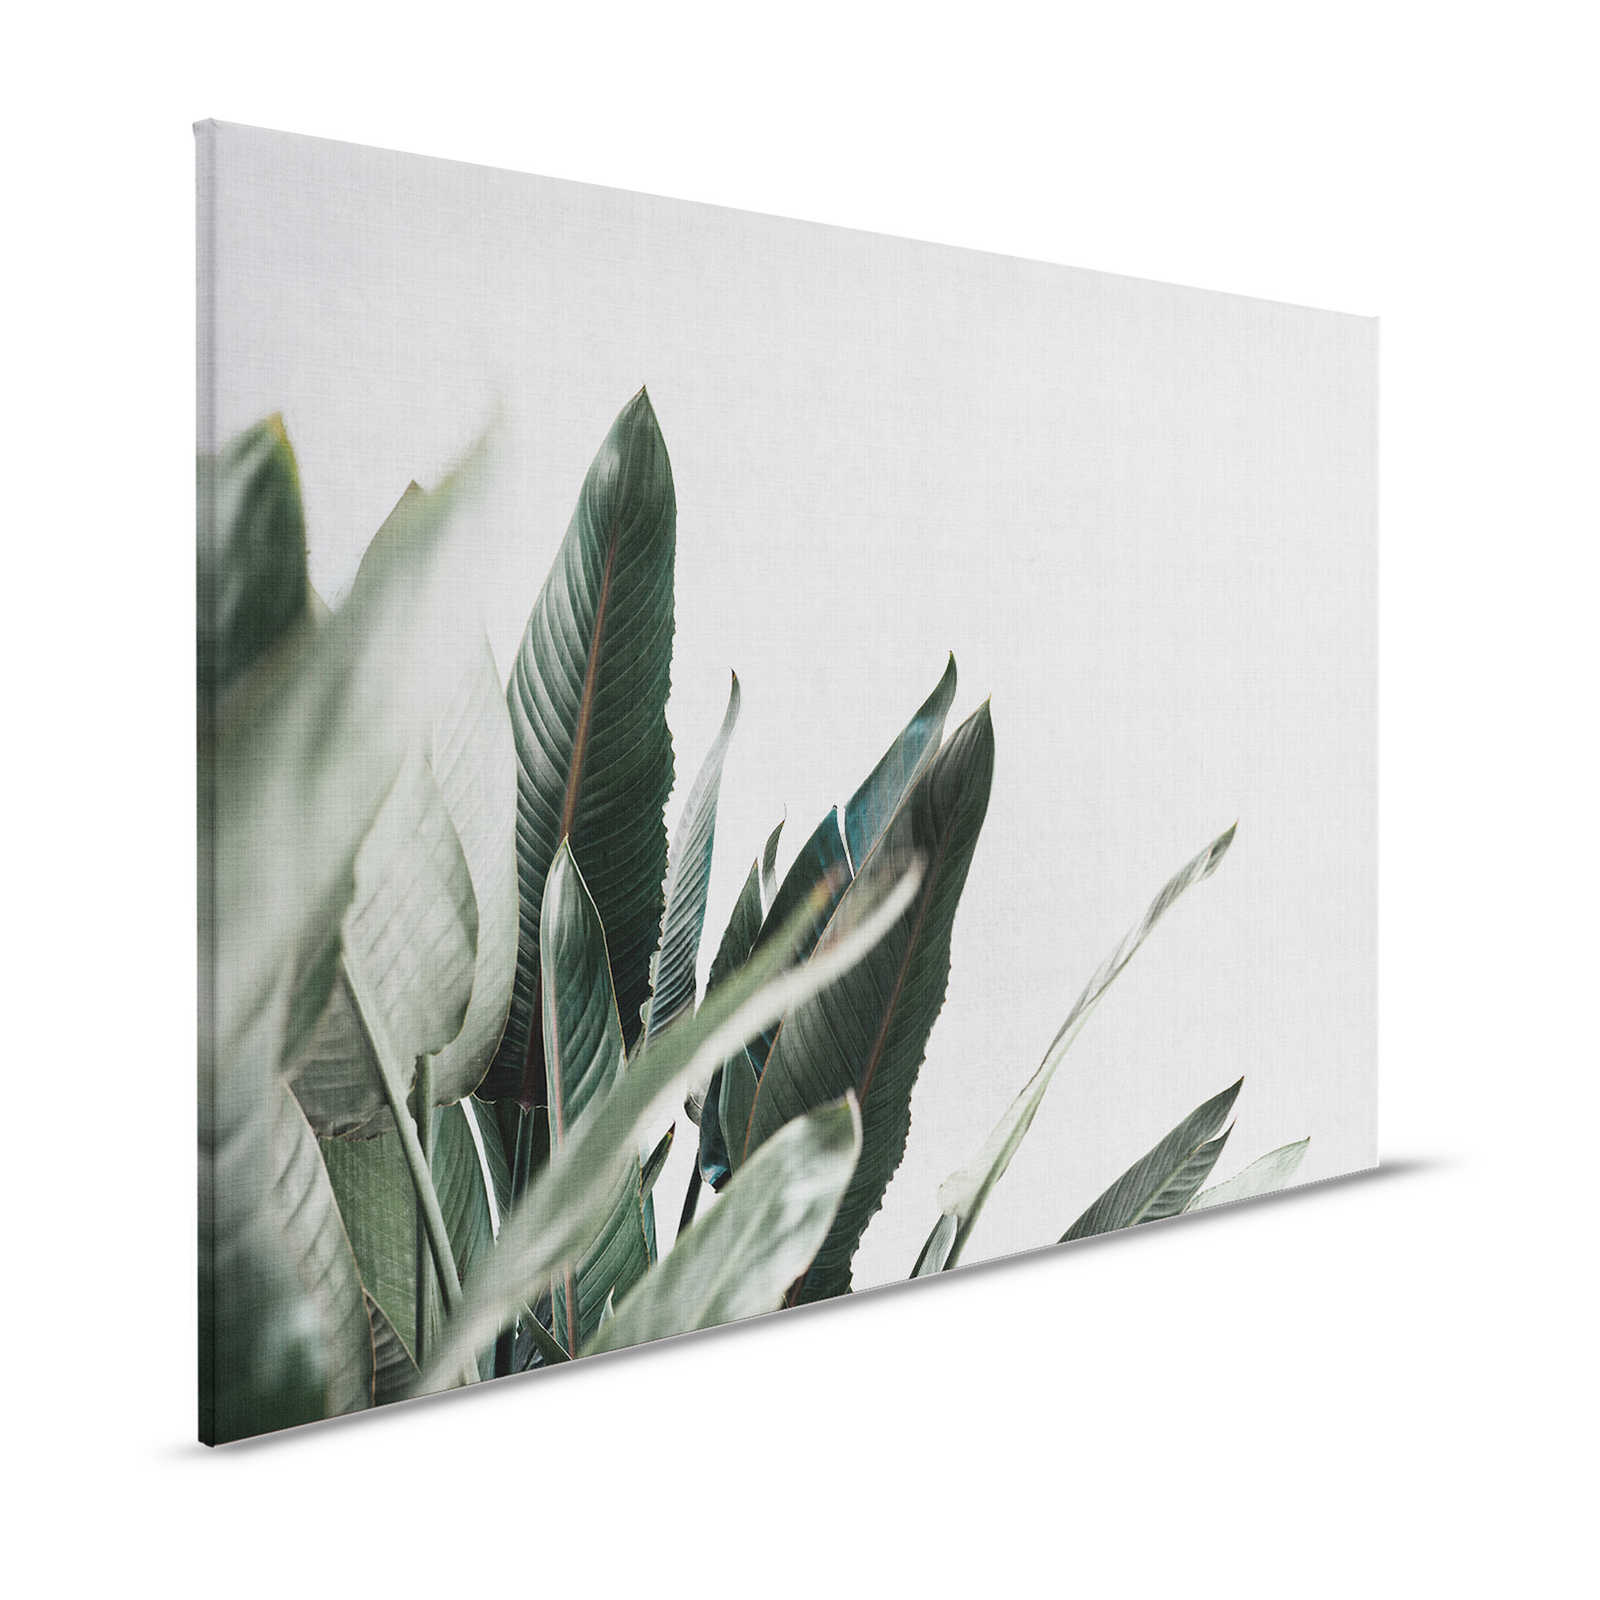 Urban jungle 1 - Leinwandbild mit Palmenblättern in naturleinen Optik – 1,20 m x 0,80 m
